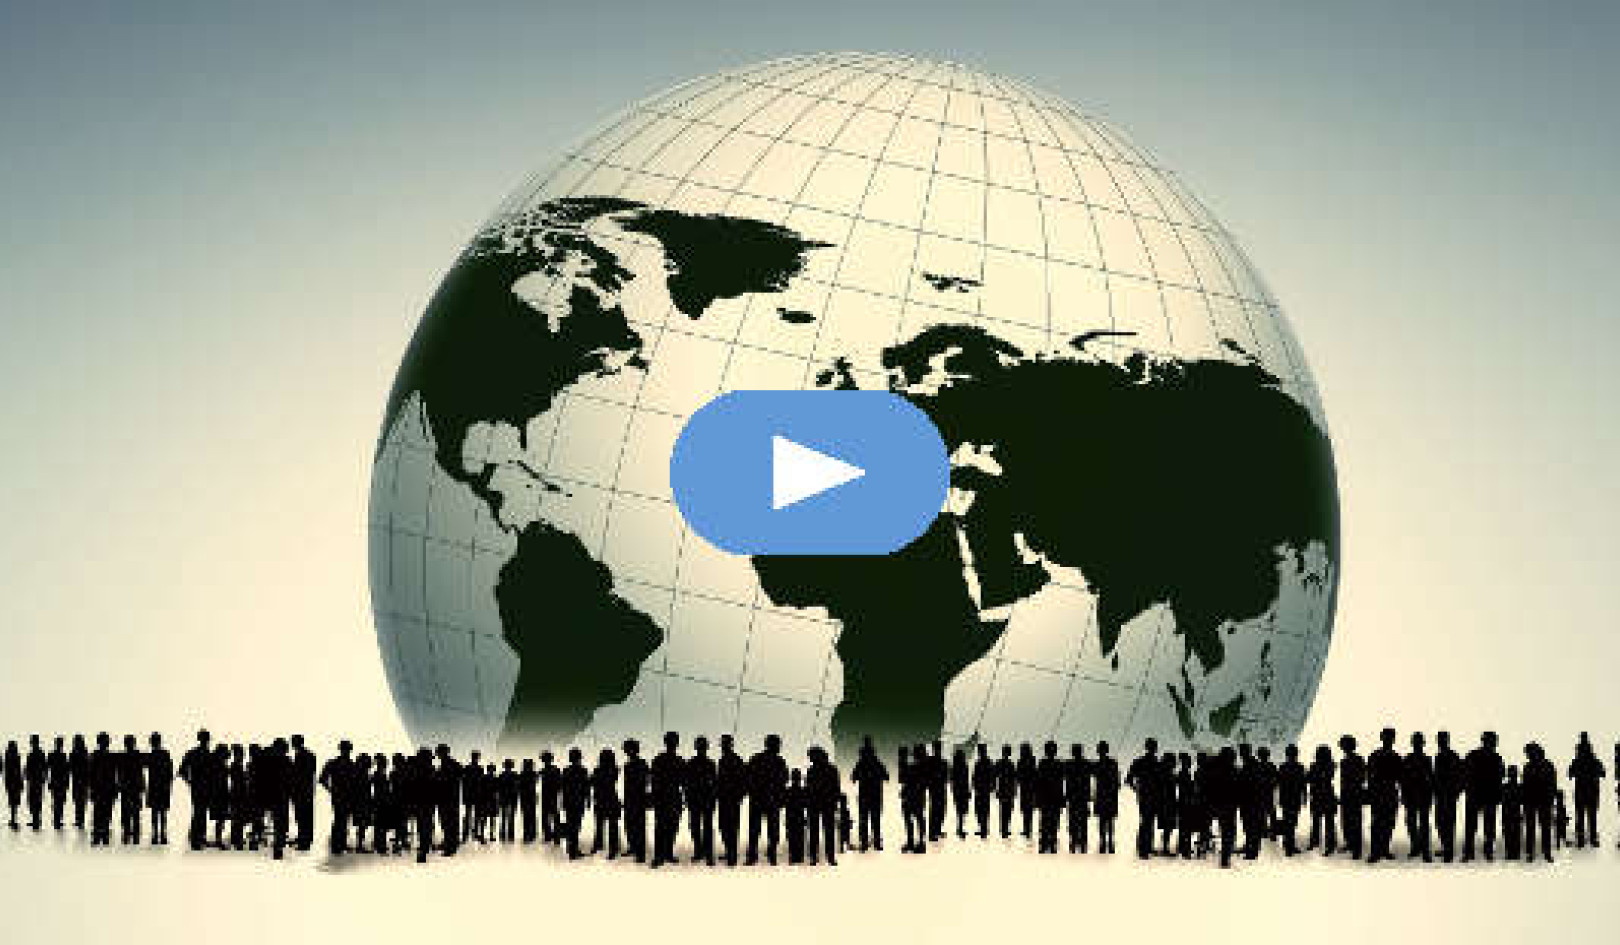 Comment abandonner les récits de guerre et donner la priorité au bien-être collectif (vidéo)